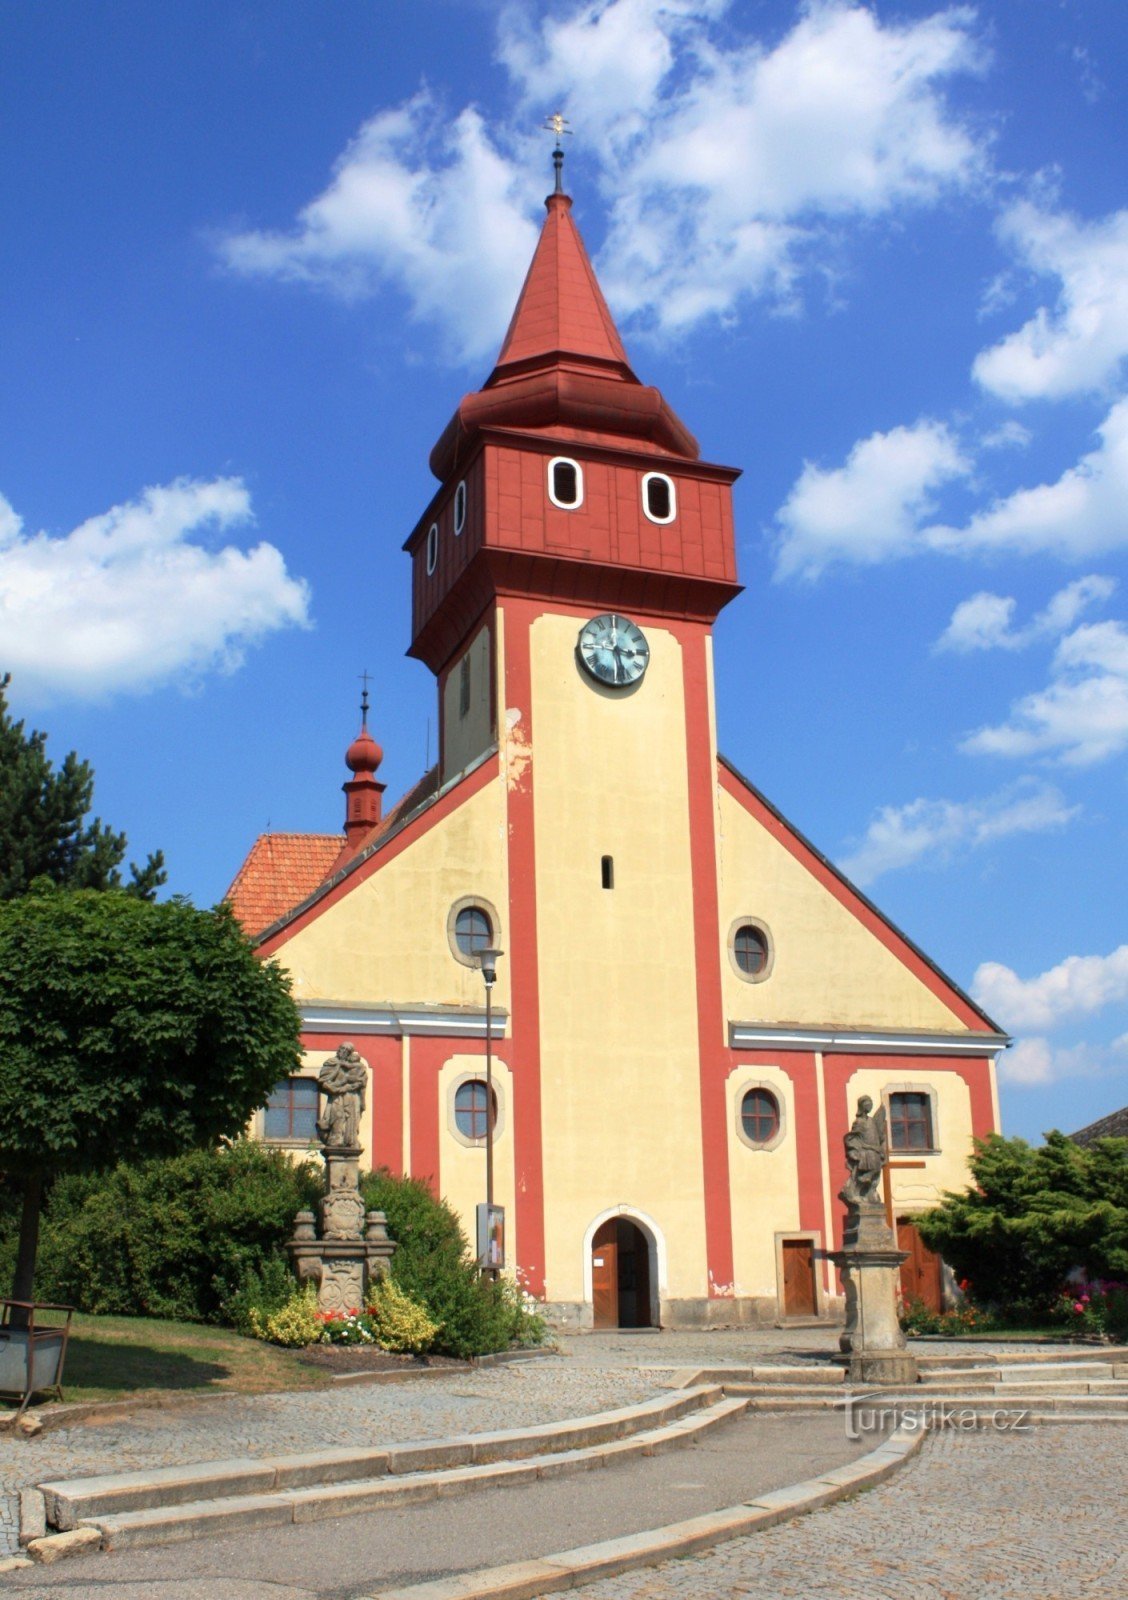 Svetlá nad Sázavou - church of St. Wenceslas